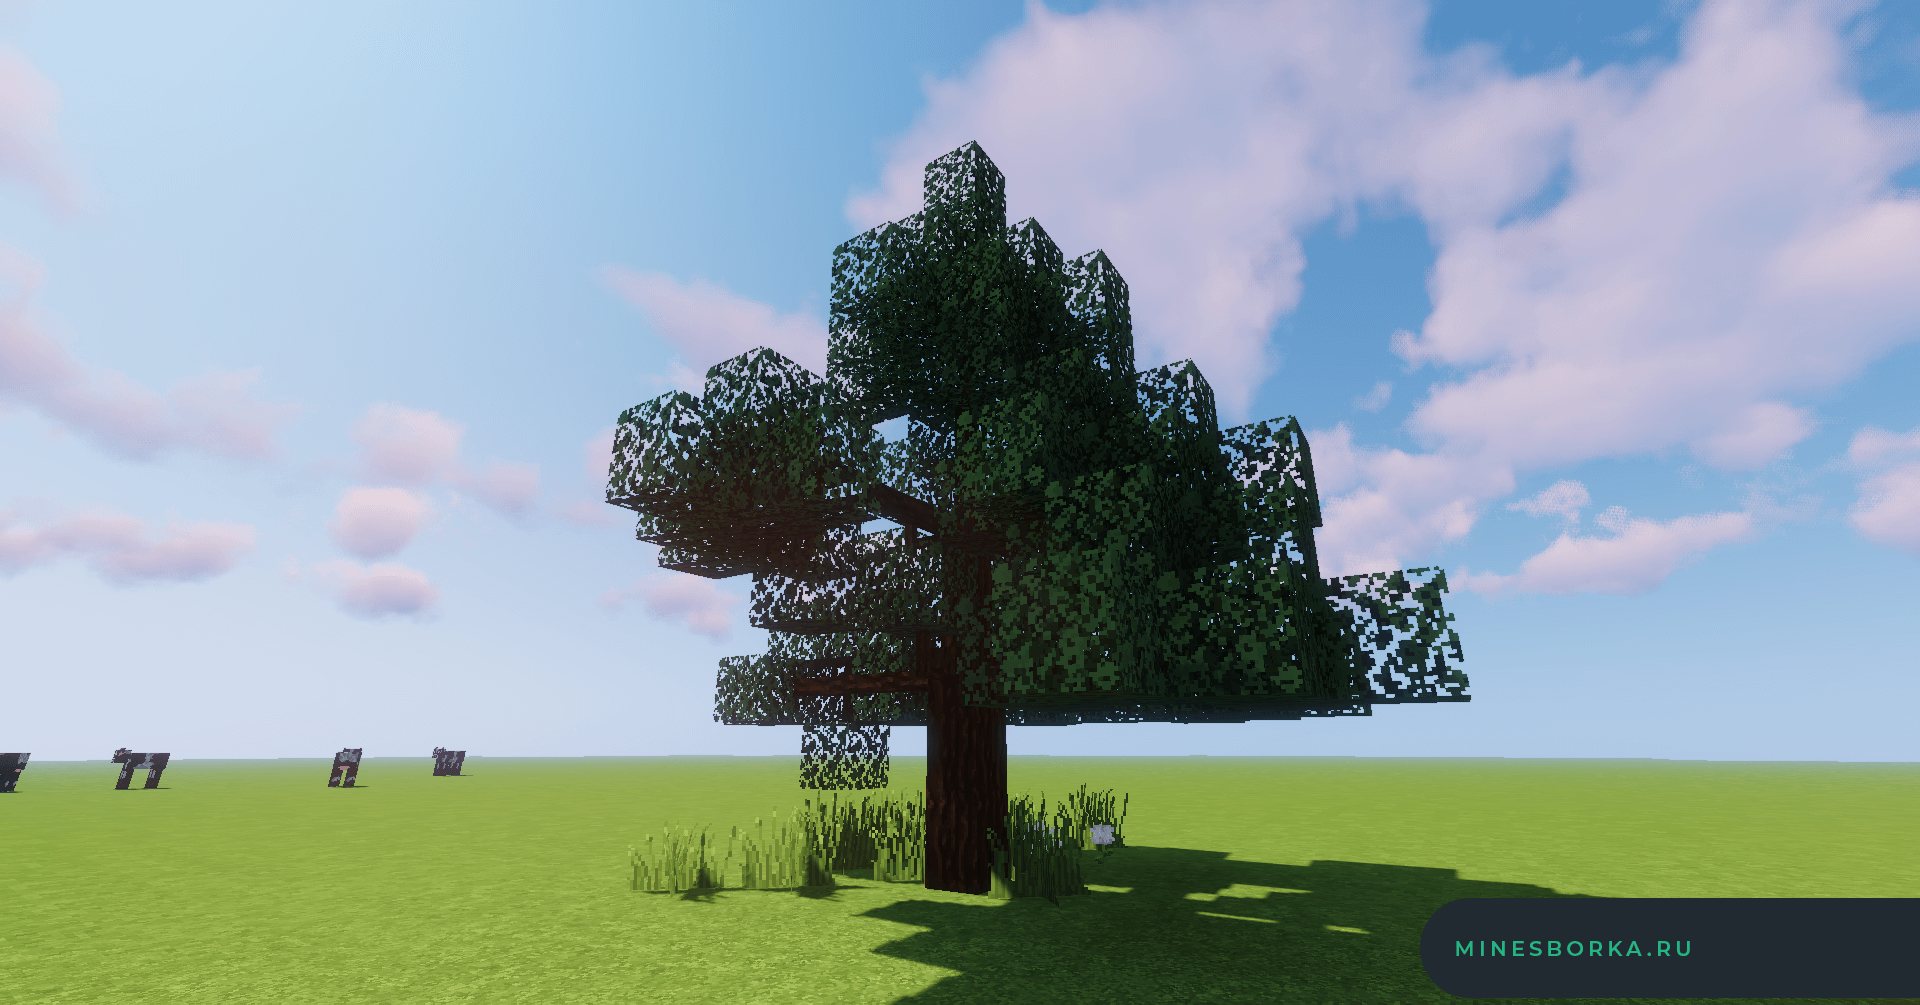 Tree mod 1.12 2. Алмазное дерево майнкрафт 1.12.2. Дерево майнкрафт 1.16.5. Мод Dynamic Trees. Dynamic Trees 1.12.2.